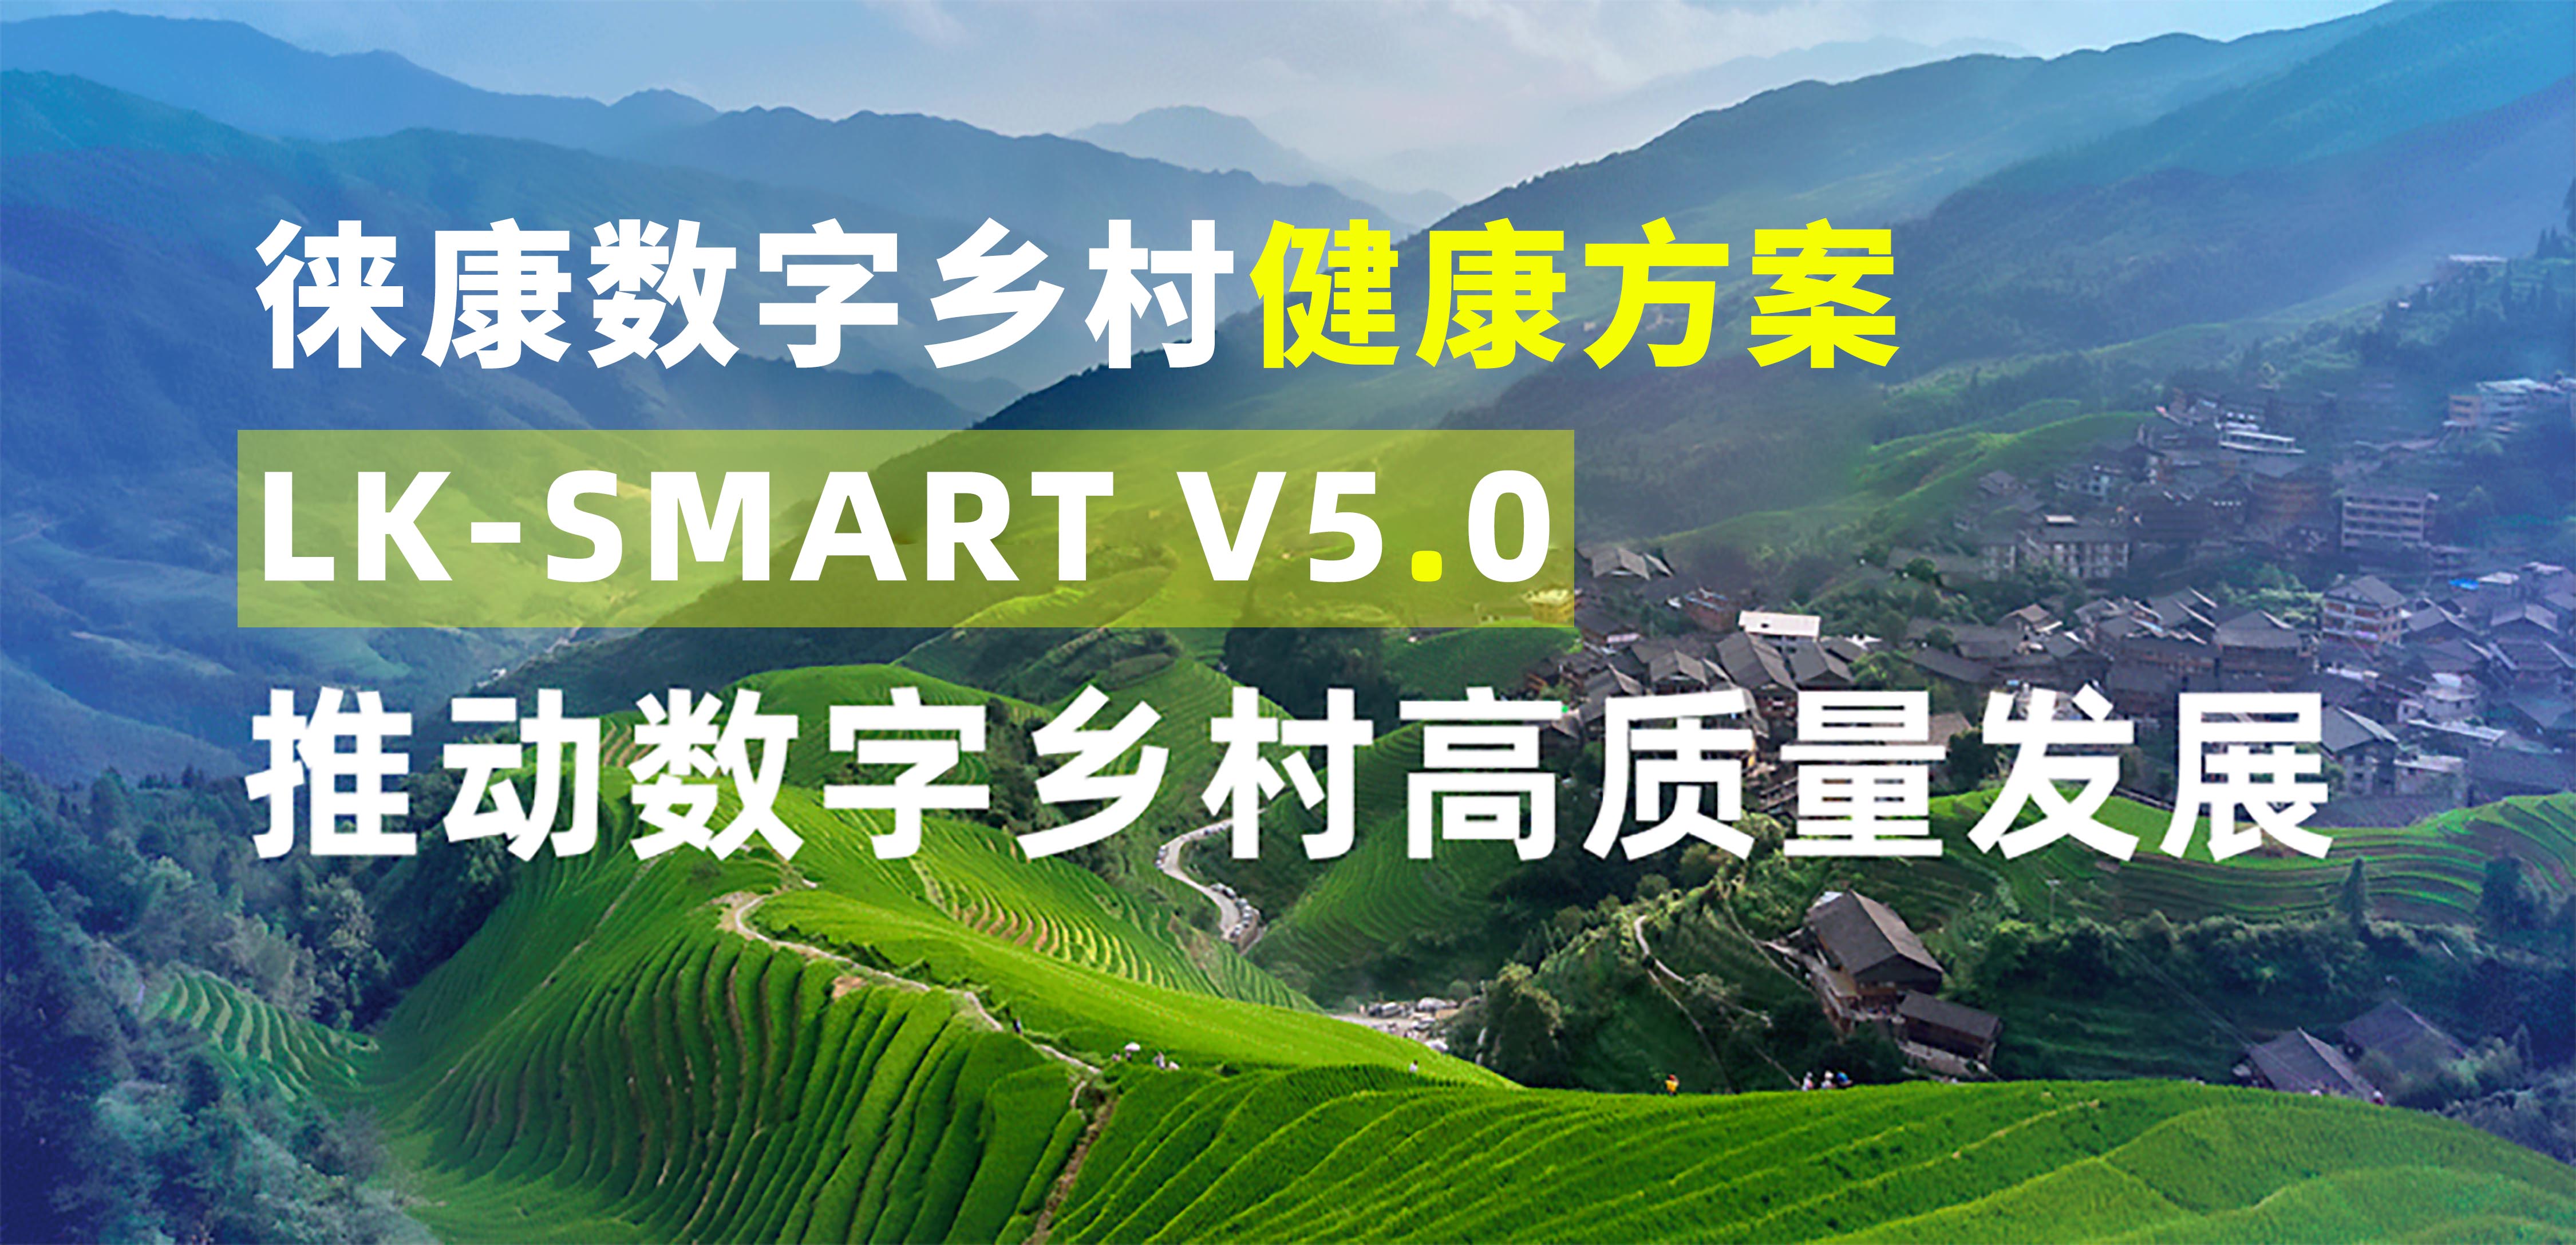 徠康發布“數字鄉村”健康方案LK-SMART V5.0